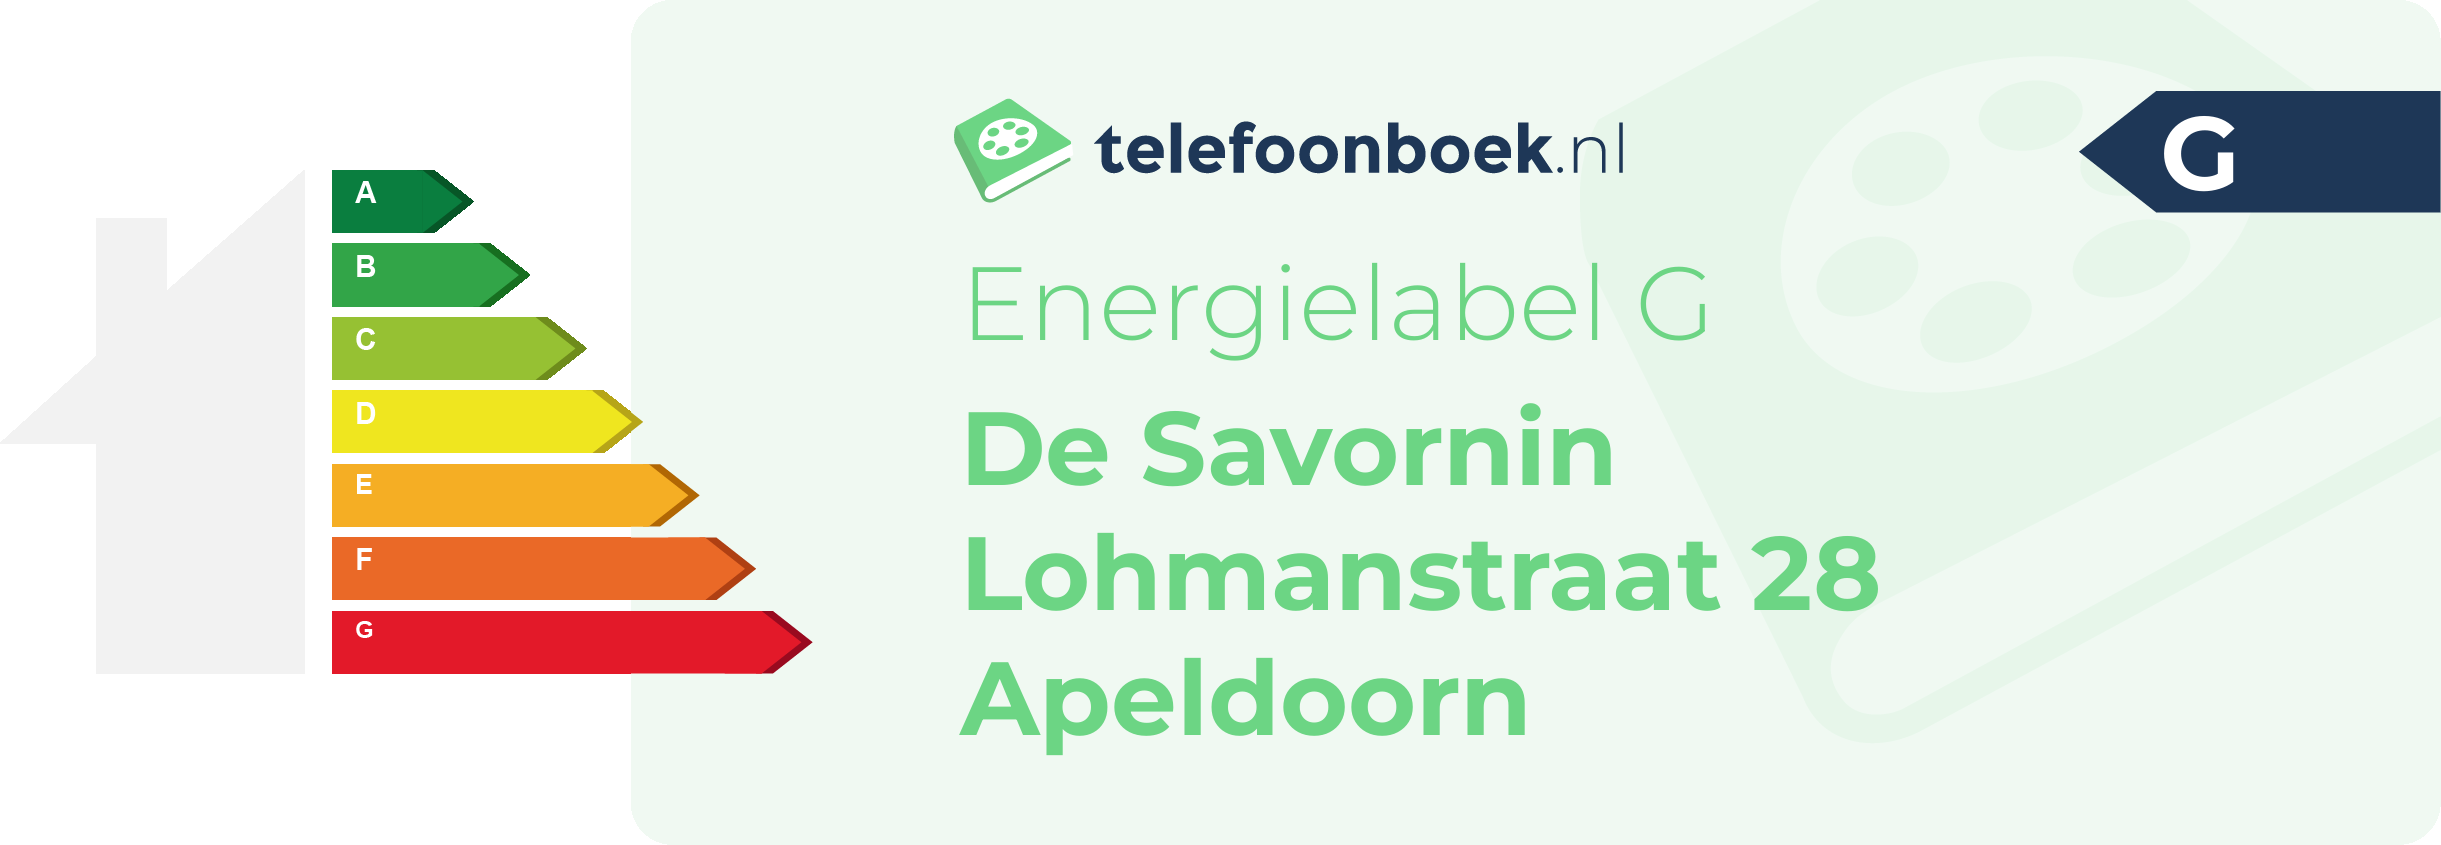 Energielabel De Savornin Lohmanstraat 28 Apeldoorn